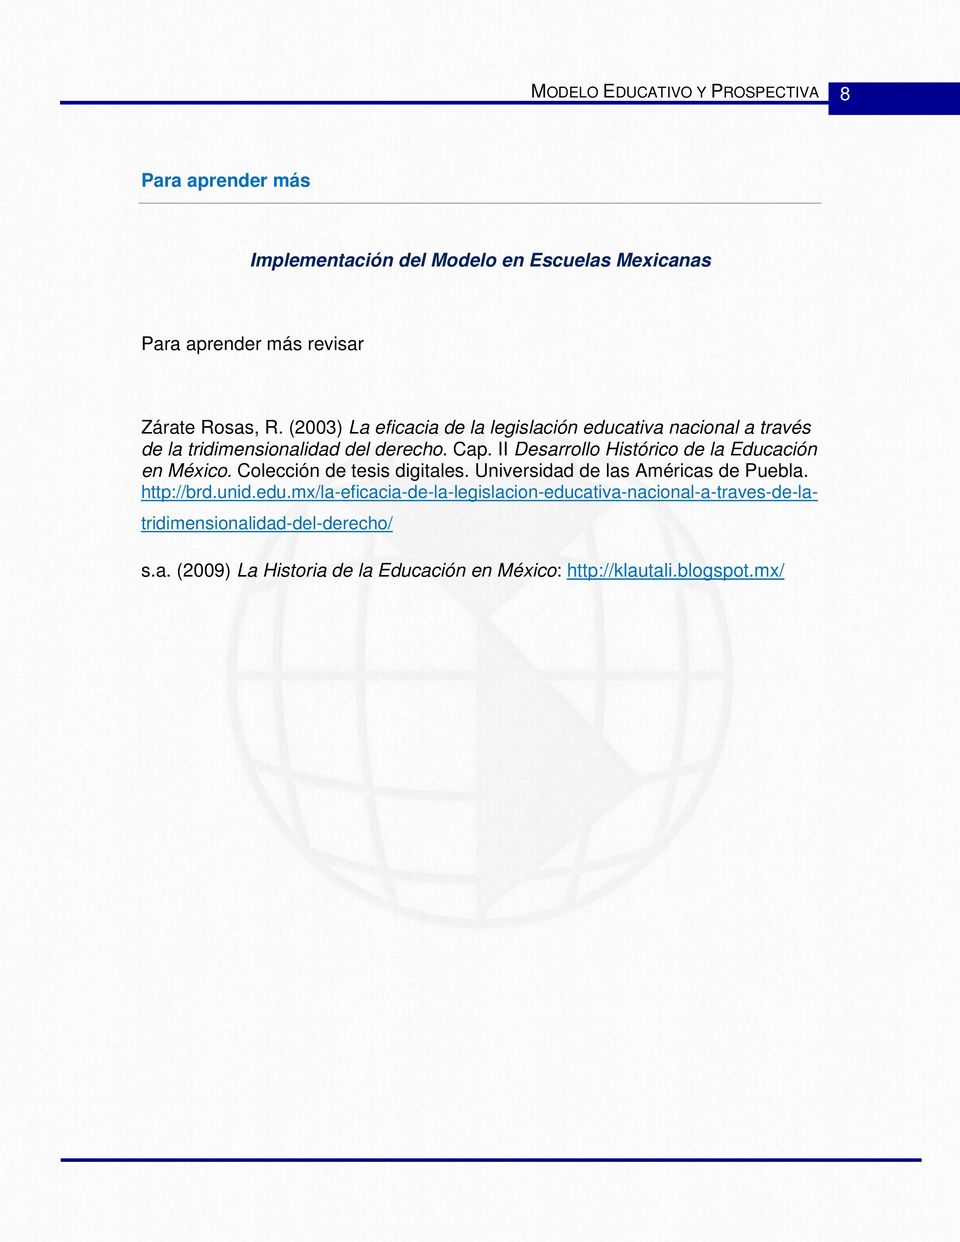 II Desarrollo Histórico de la Educación en México. Colección de tesis digitales. Universidad de las Américas de Puebla. http://brd.unid.edu.